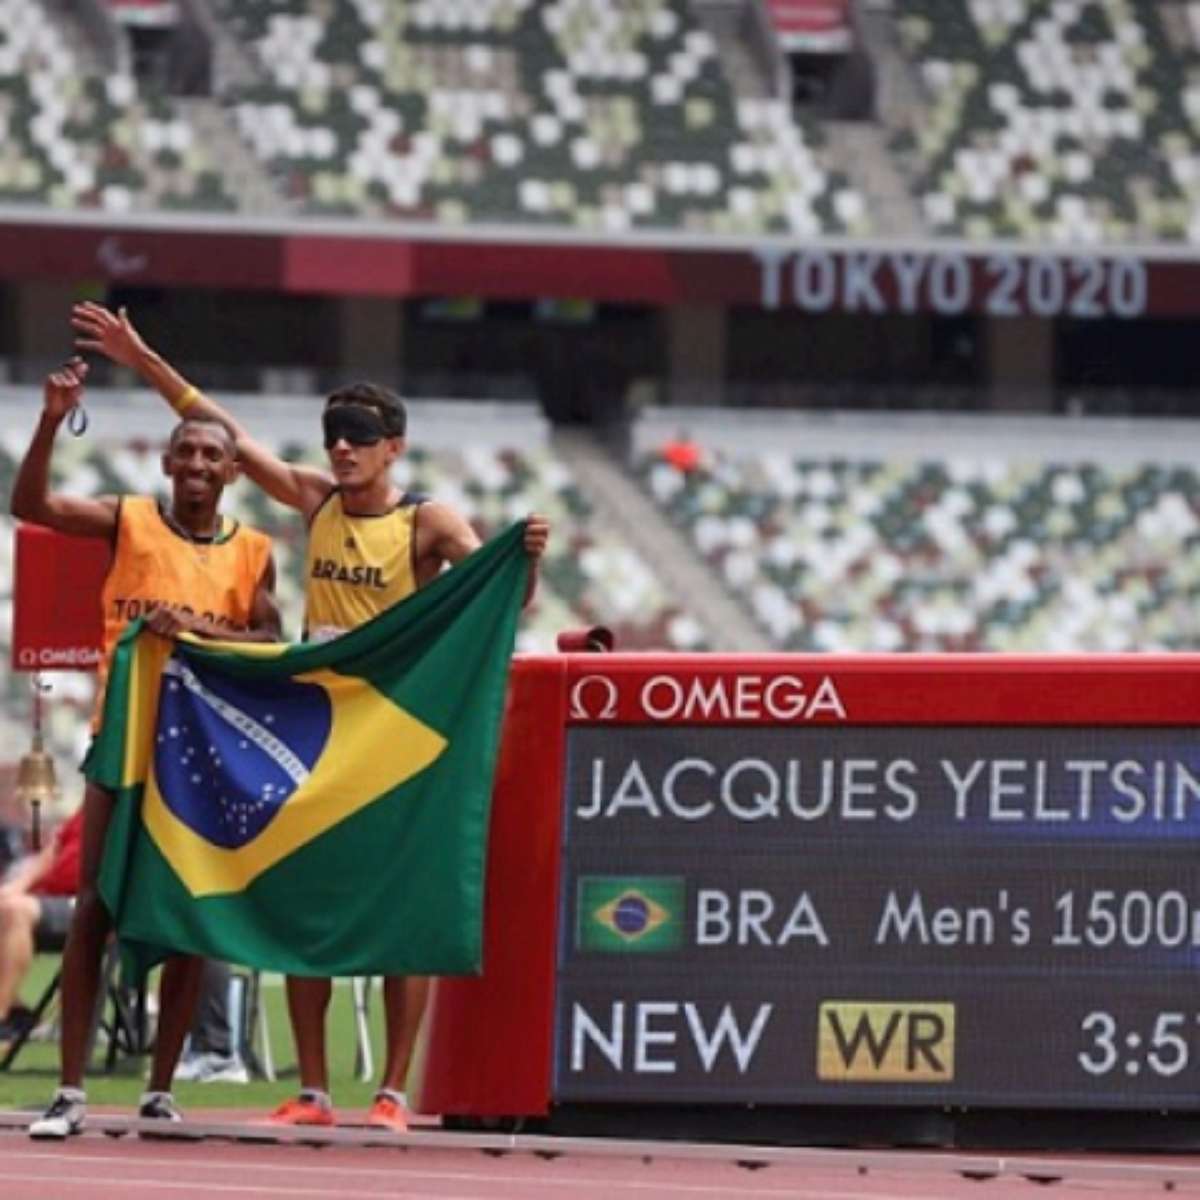 Homem mais alto do Brasil estreia no vôlei sentado por ouro em Paris